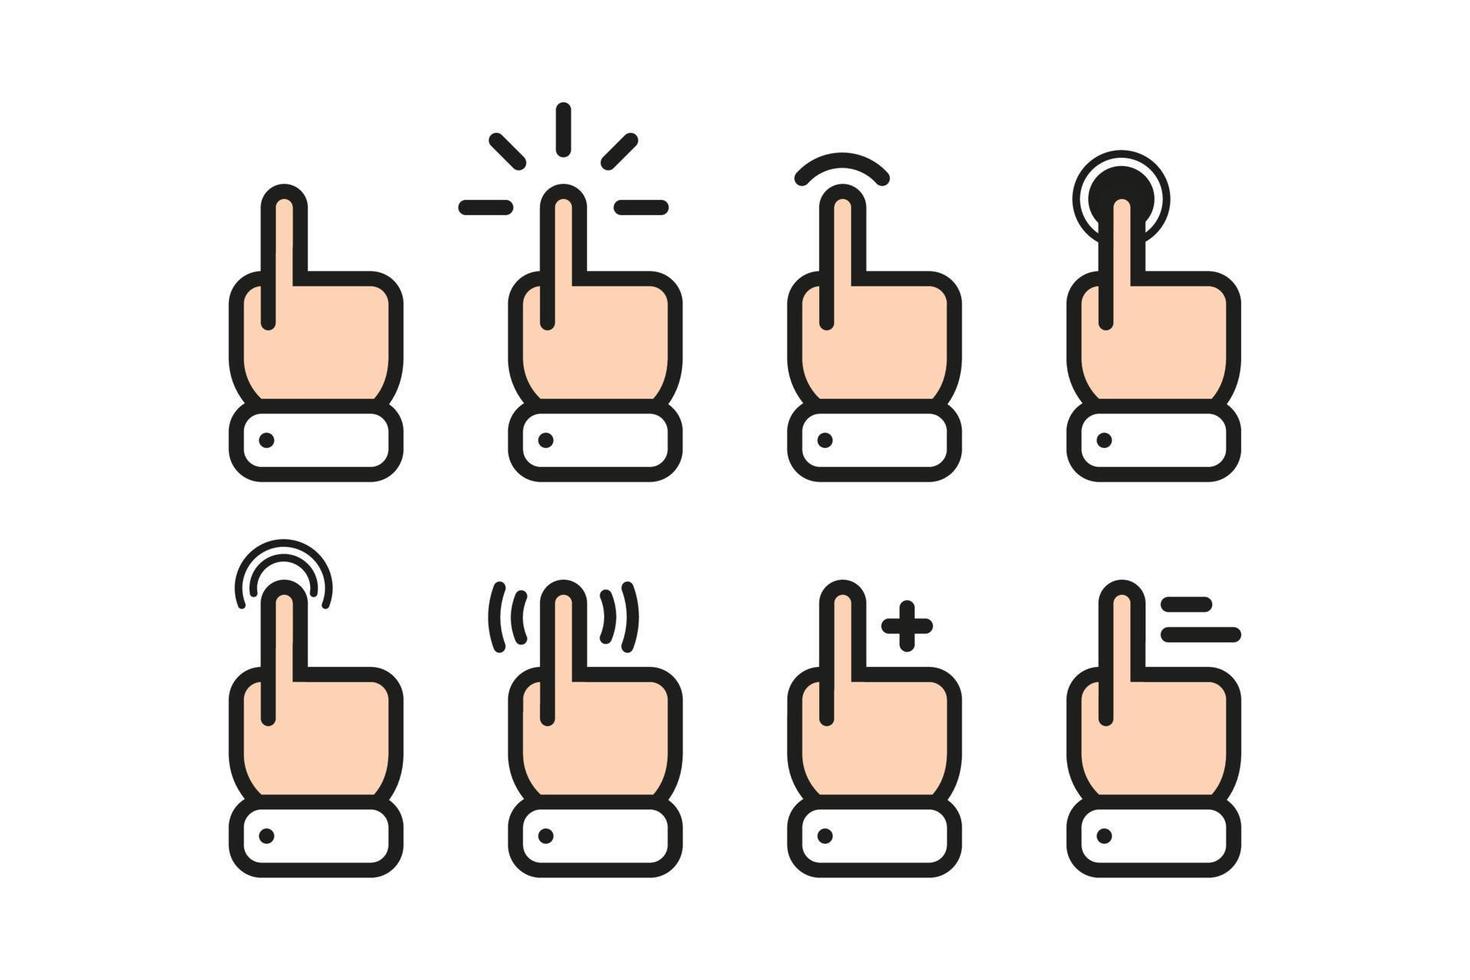 conjunto de cursor del mouse con el dedo en varios gestos. iconos para dispositivos móviles con pantalla táctil. vector en diseño plano